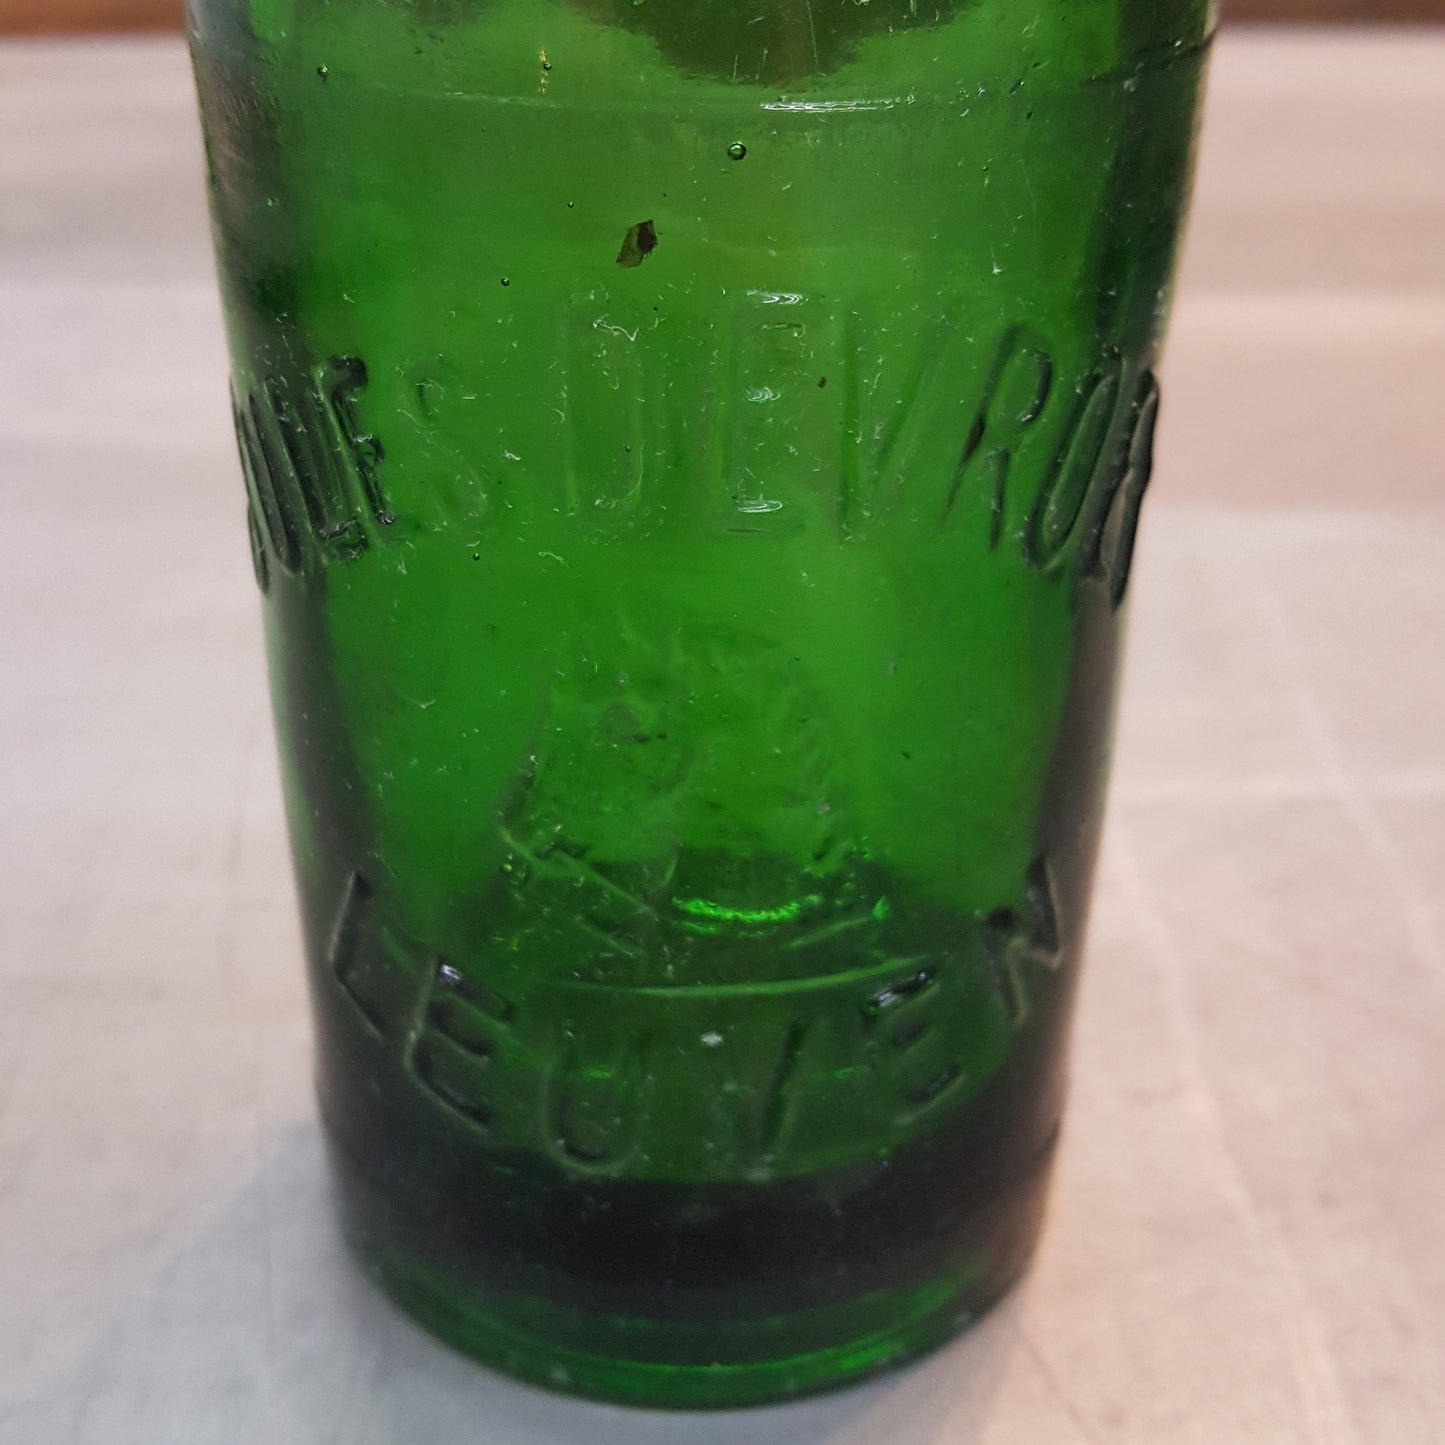 24 Beer Bottles in Crate, From Leuven Belgium (c. 1941)